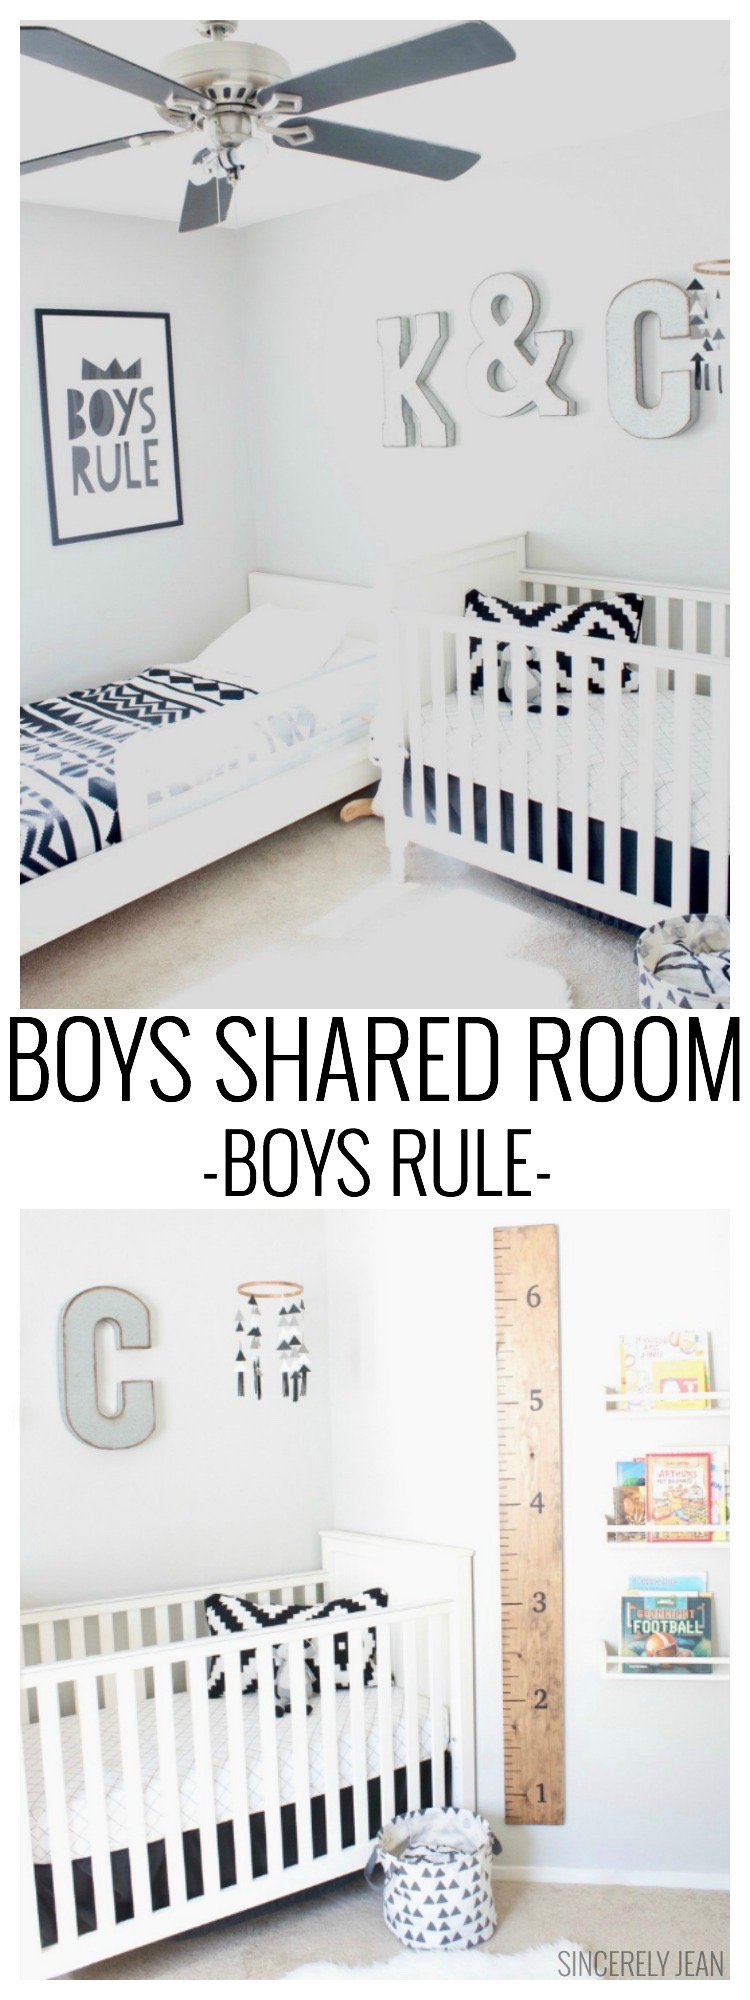 Boys Rule! - Boys Shared Room